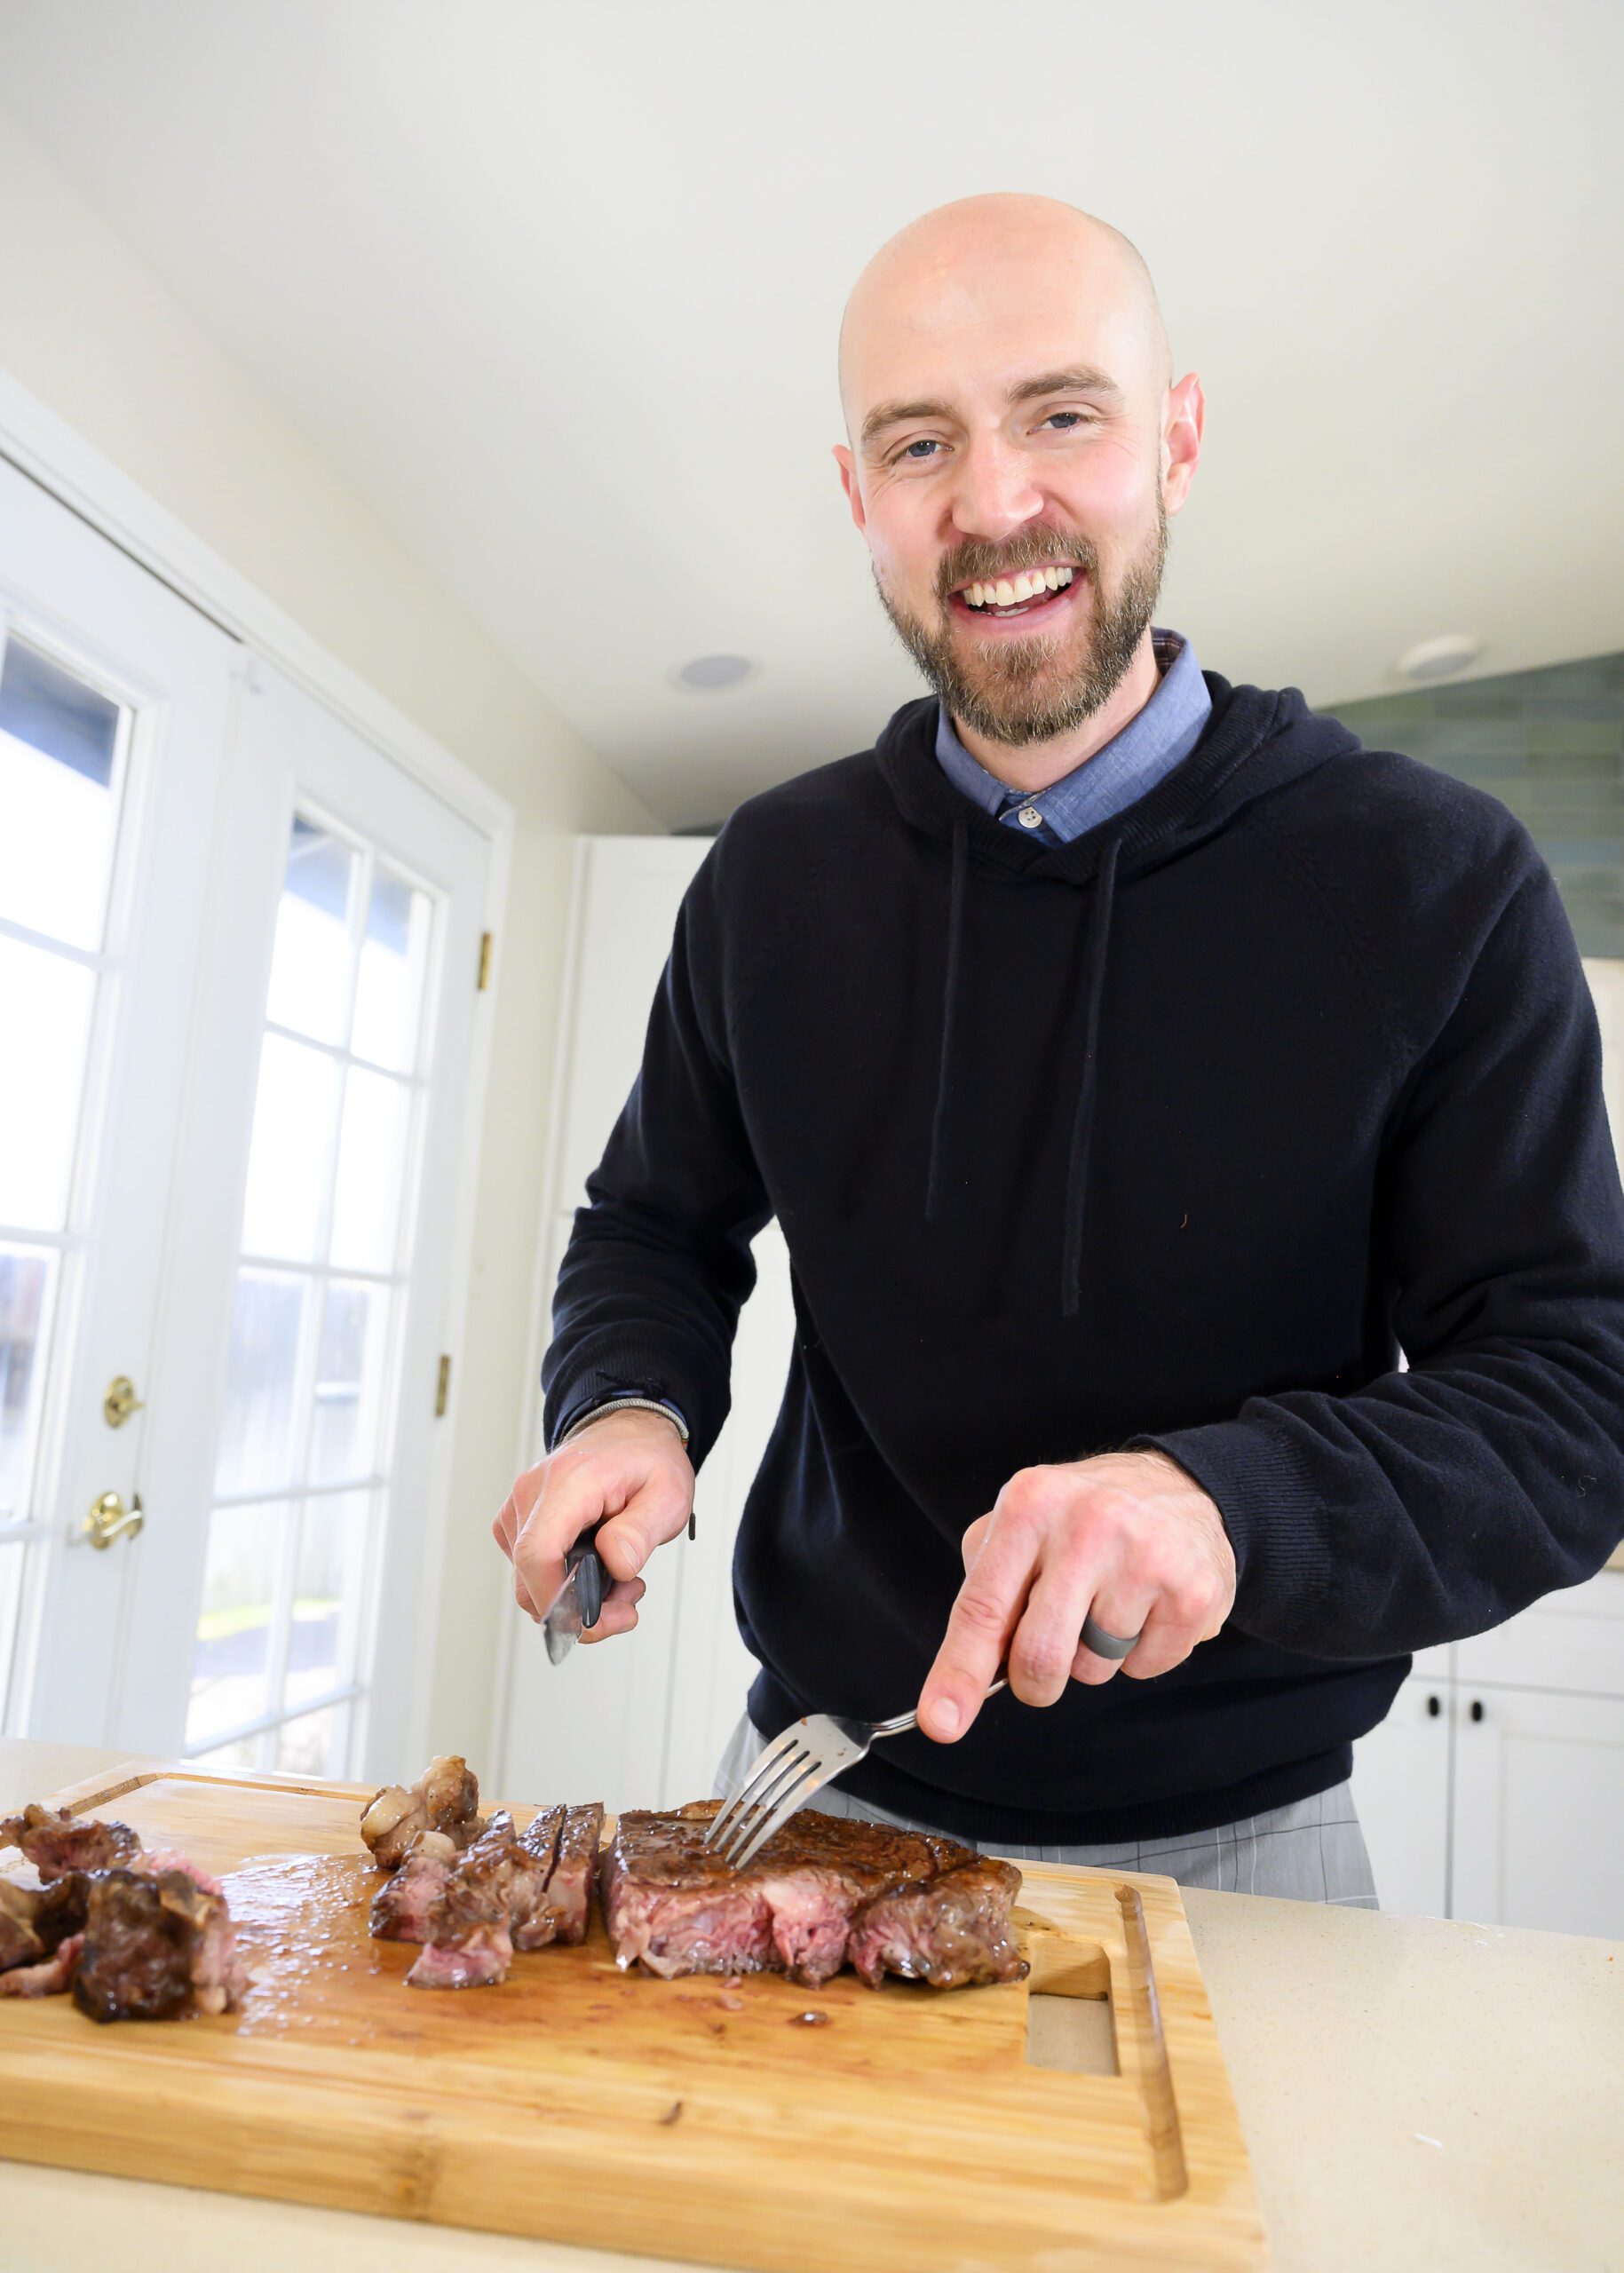 Man cuts steak on kitchen counter